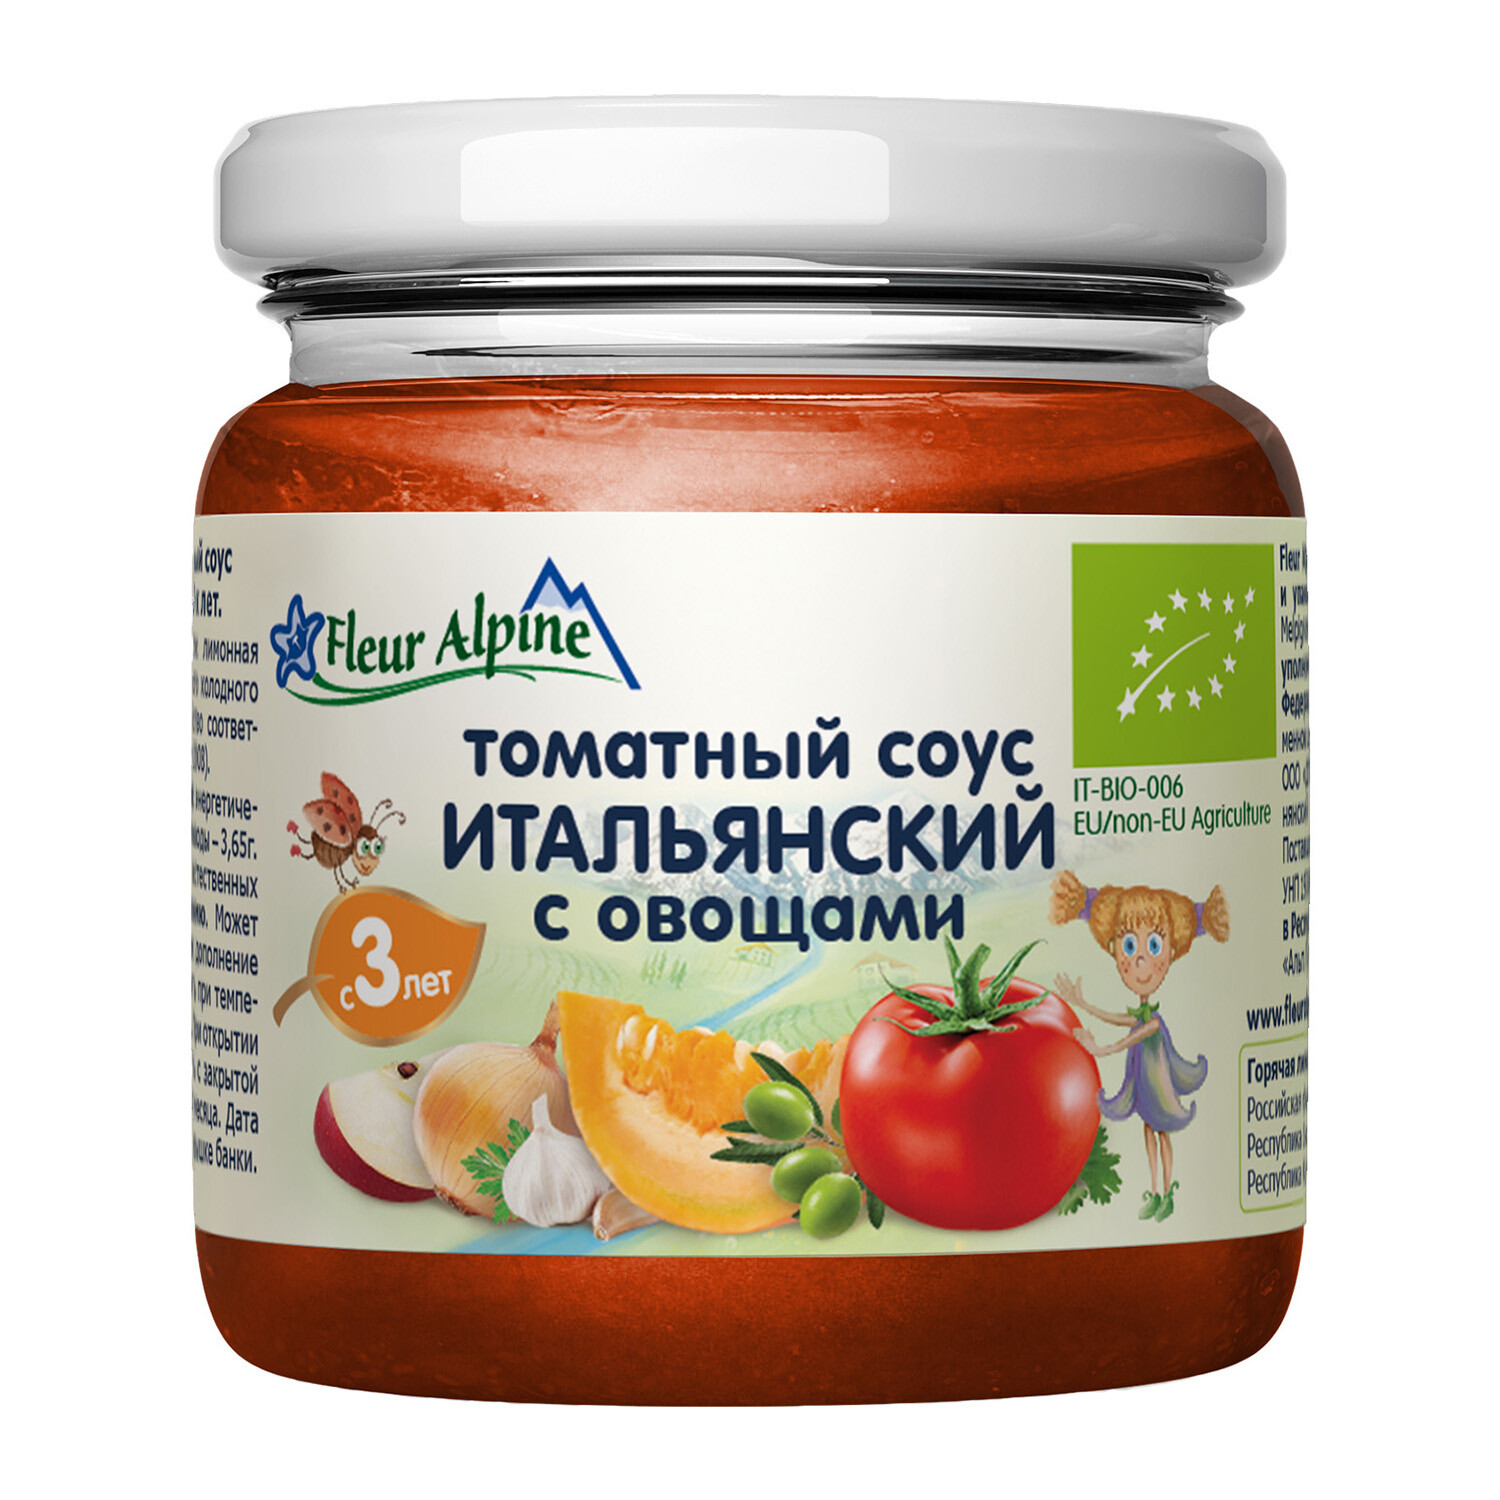 Флёр Альпин - соус томатный с овощами Итальянский, с 3-х лет, 95*2 0745WB